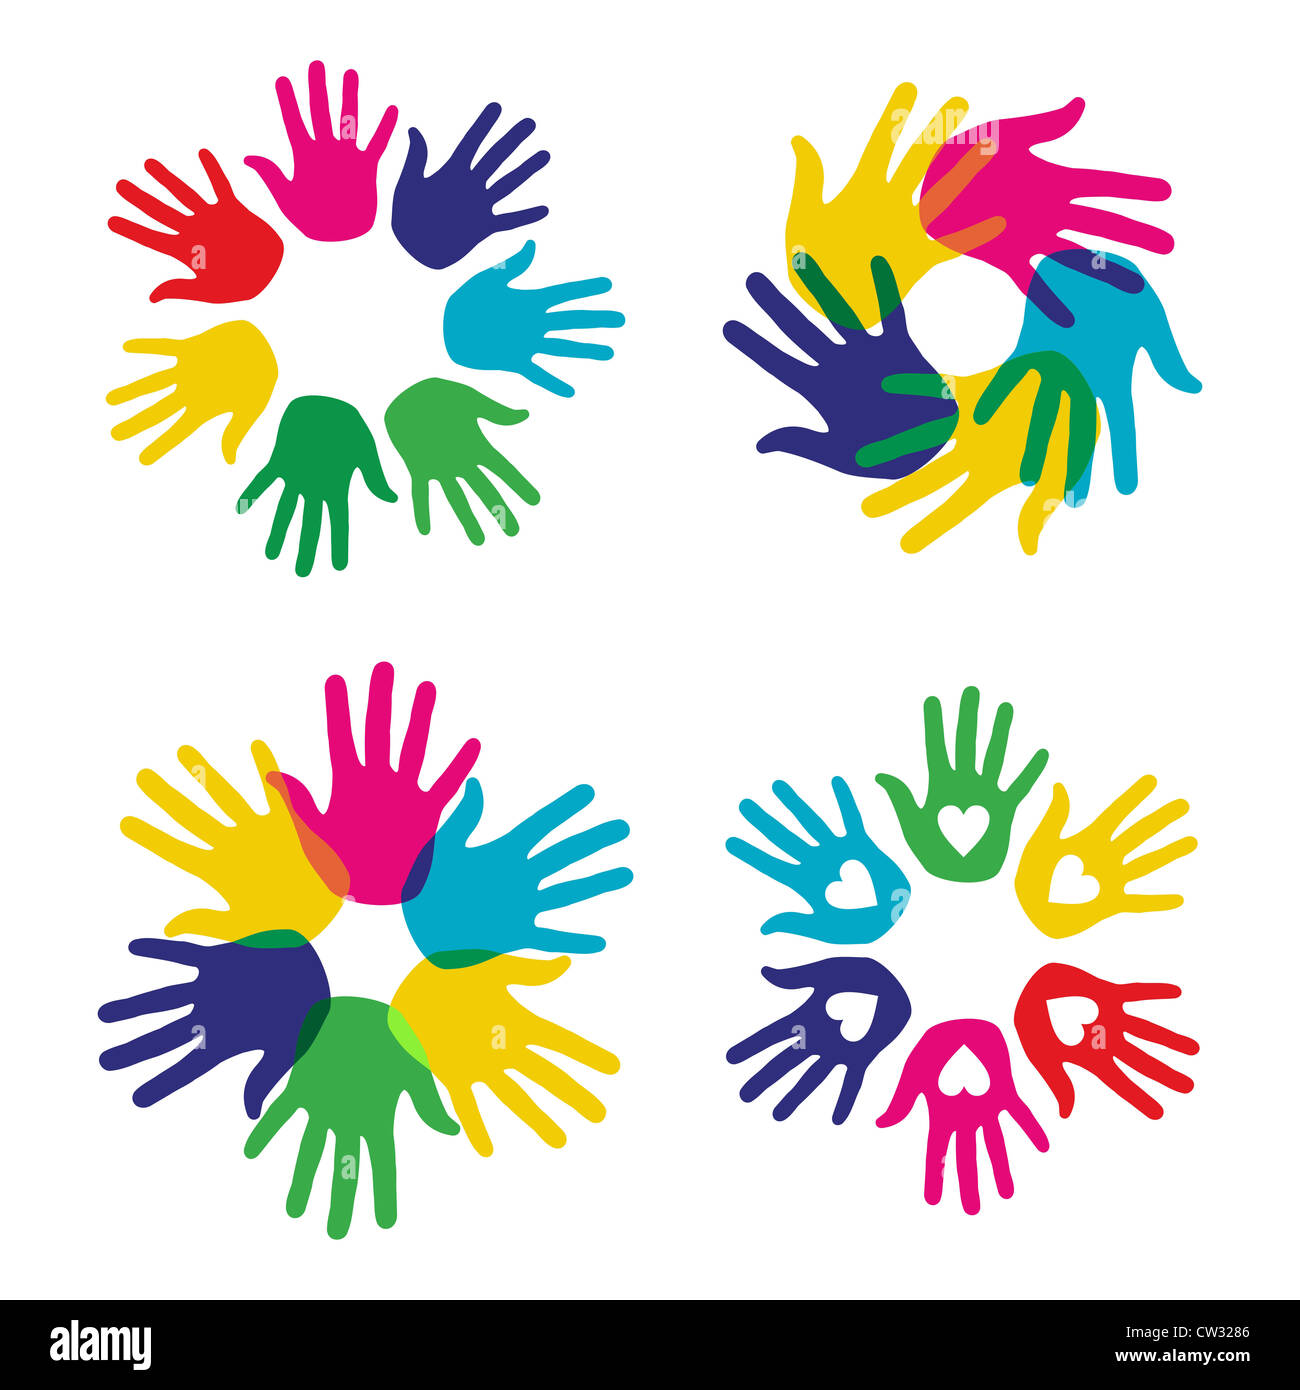 Multicolor diversidad creativa manos conjunto de símbolos. Ilustración vectorial para capas de fácil manipulación y coloración personalizada. Foto de stock